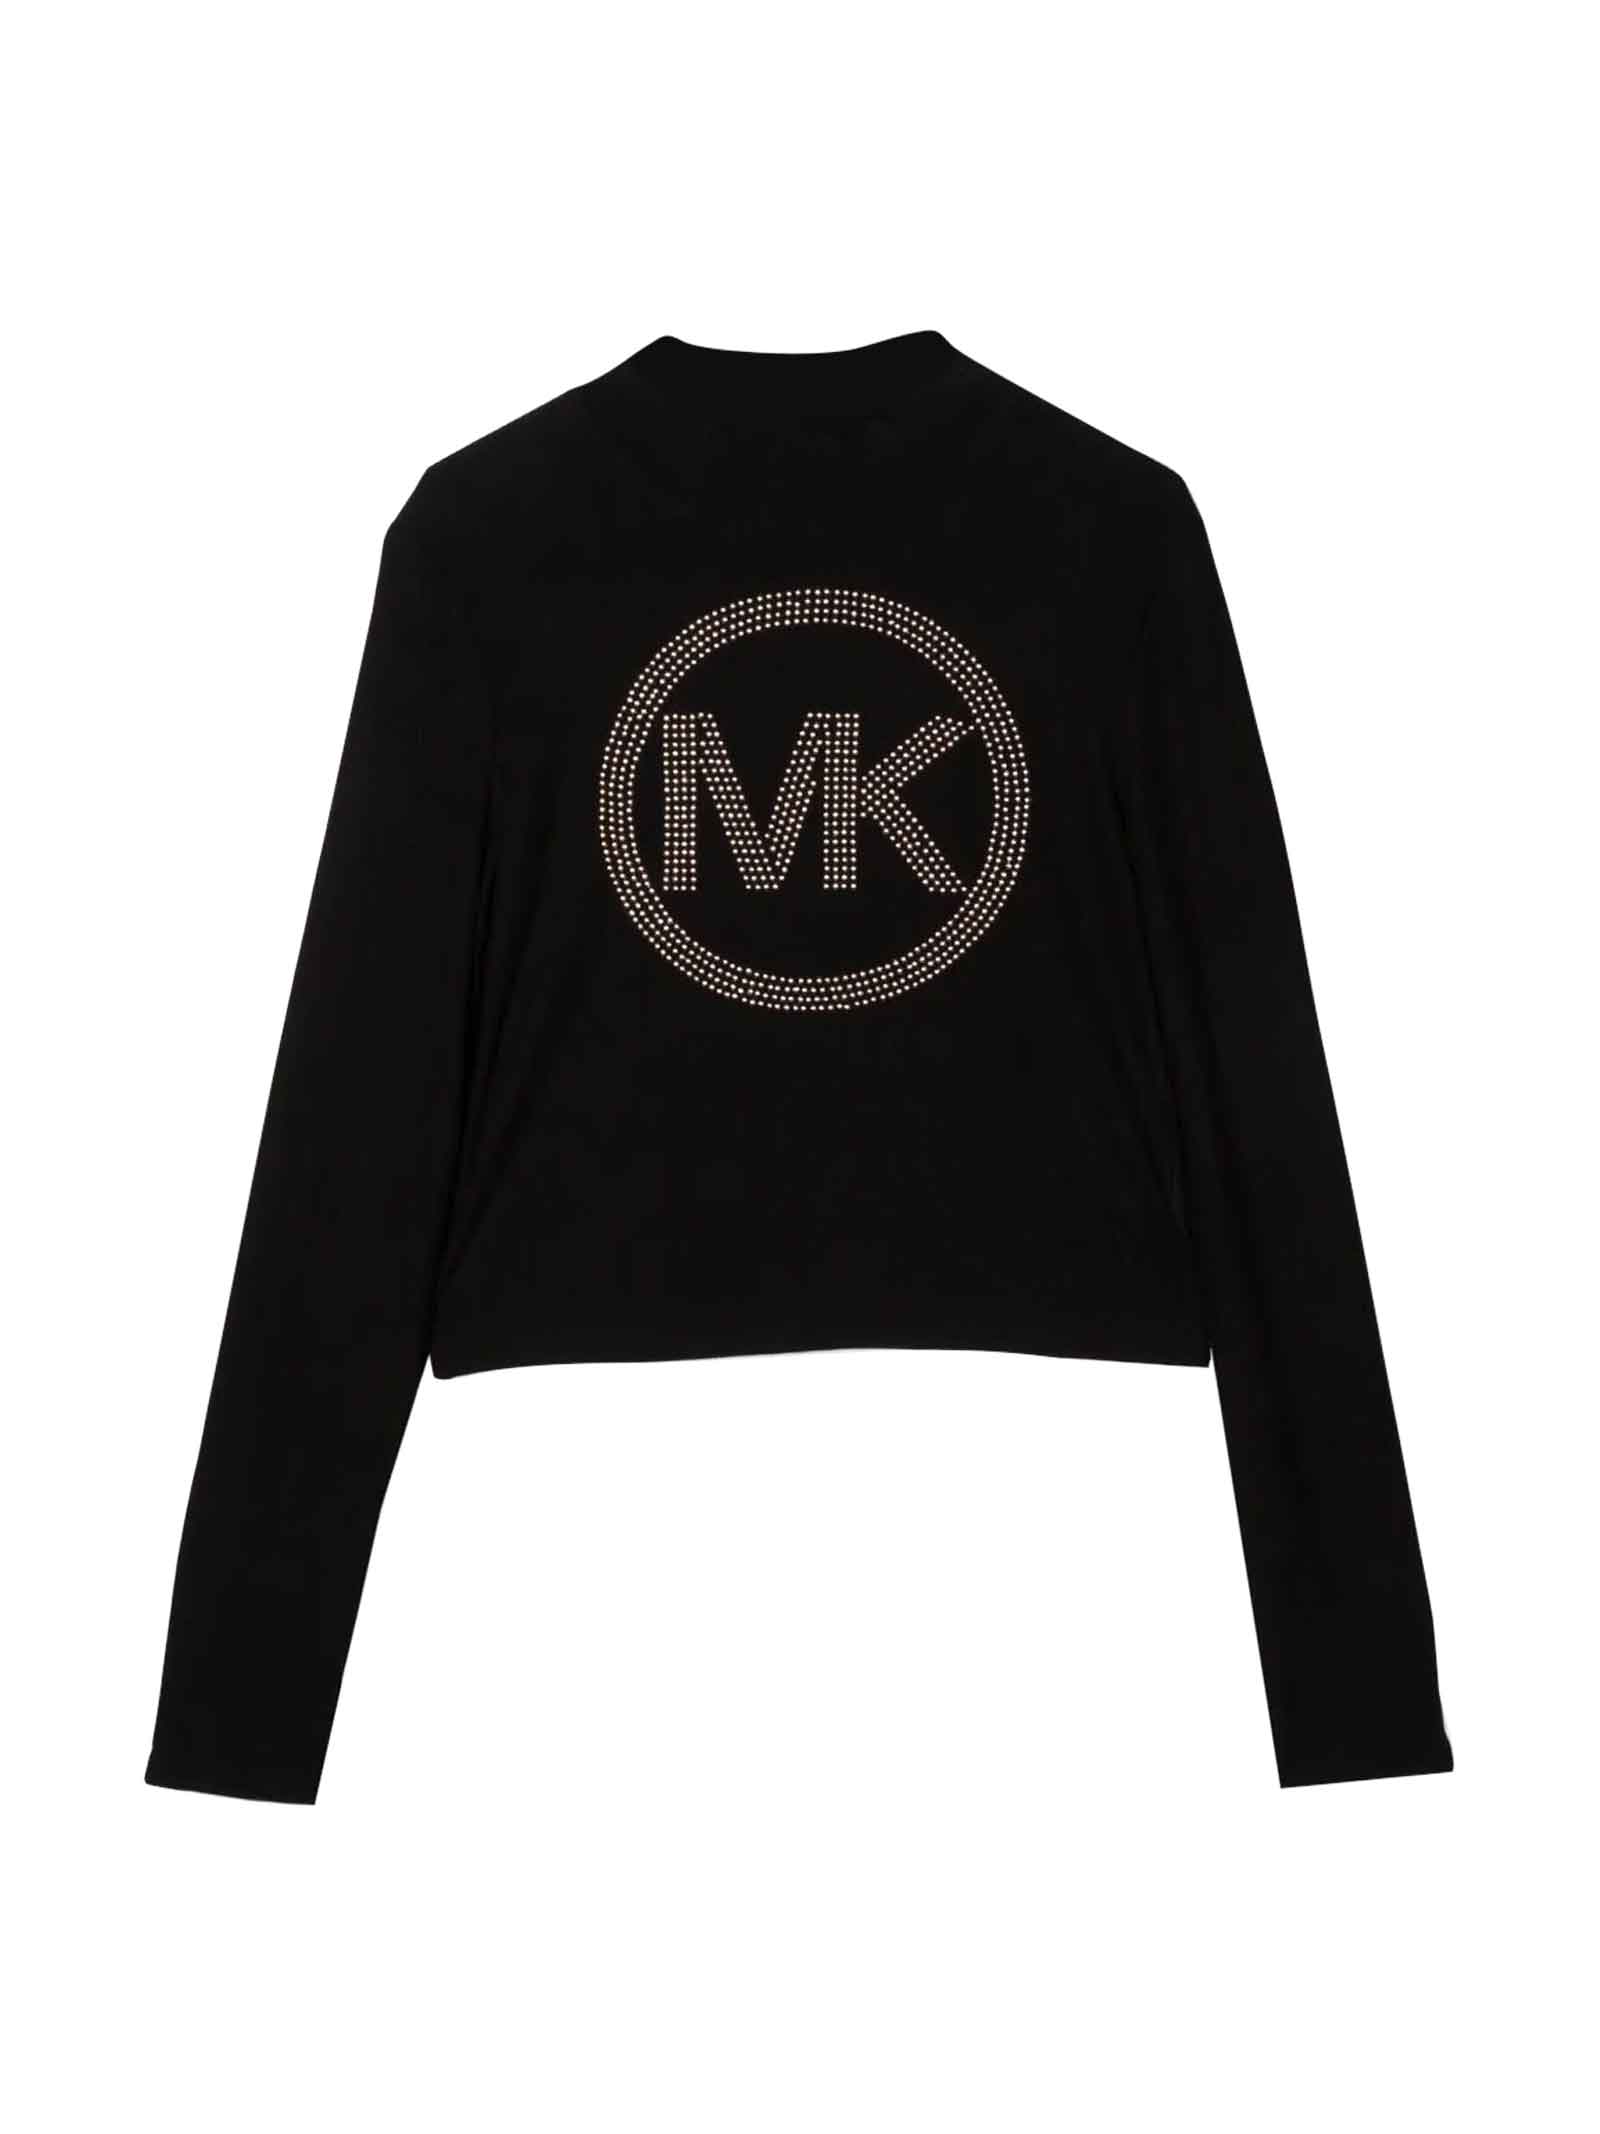 Michael Kors Black T-shirt Girl